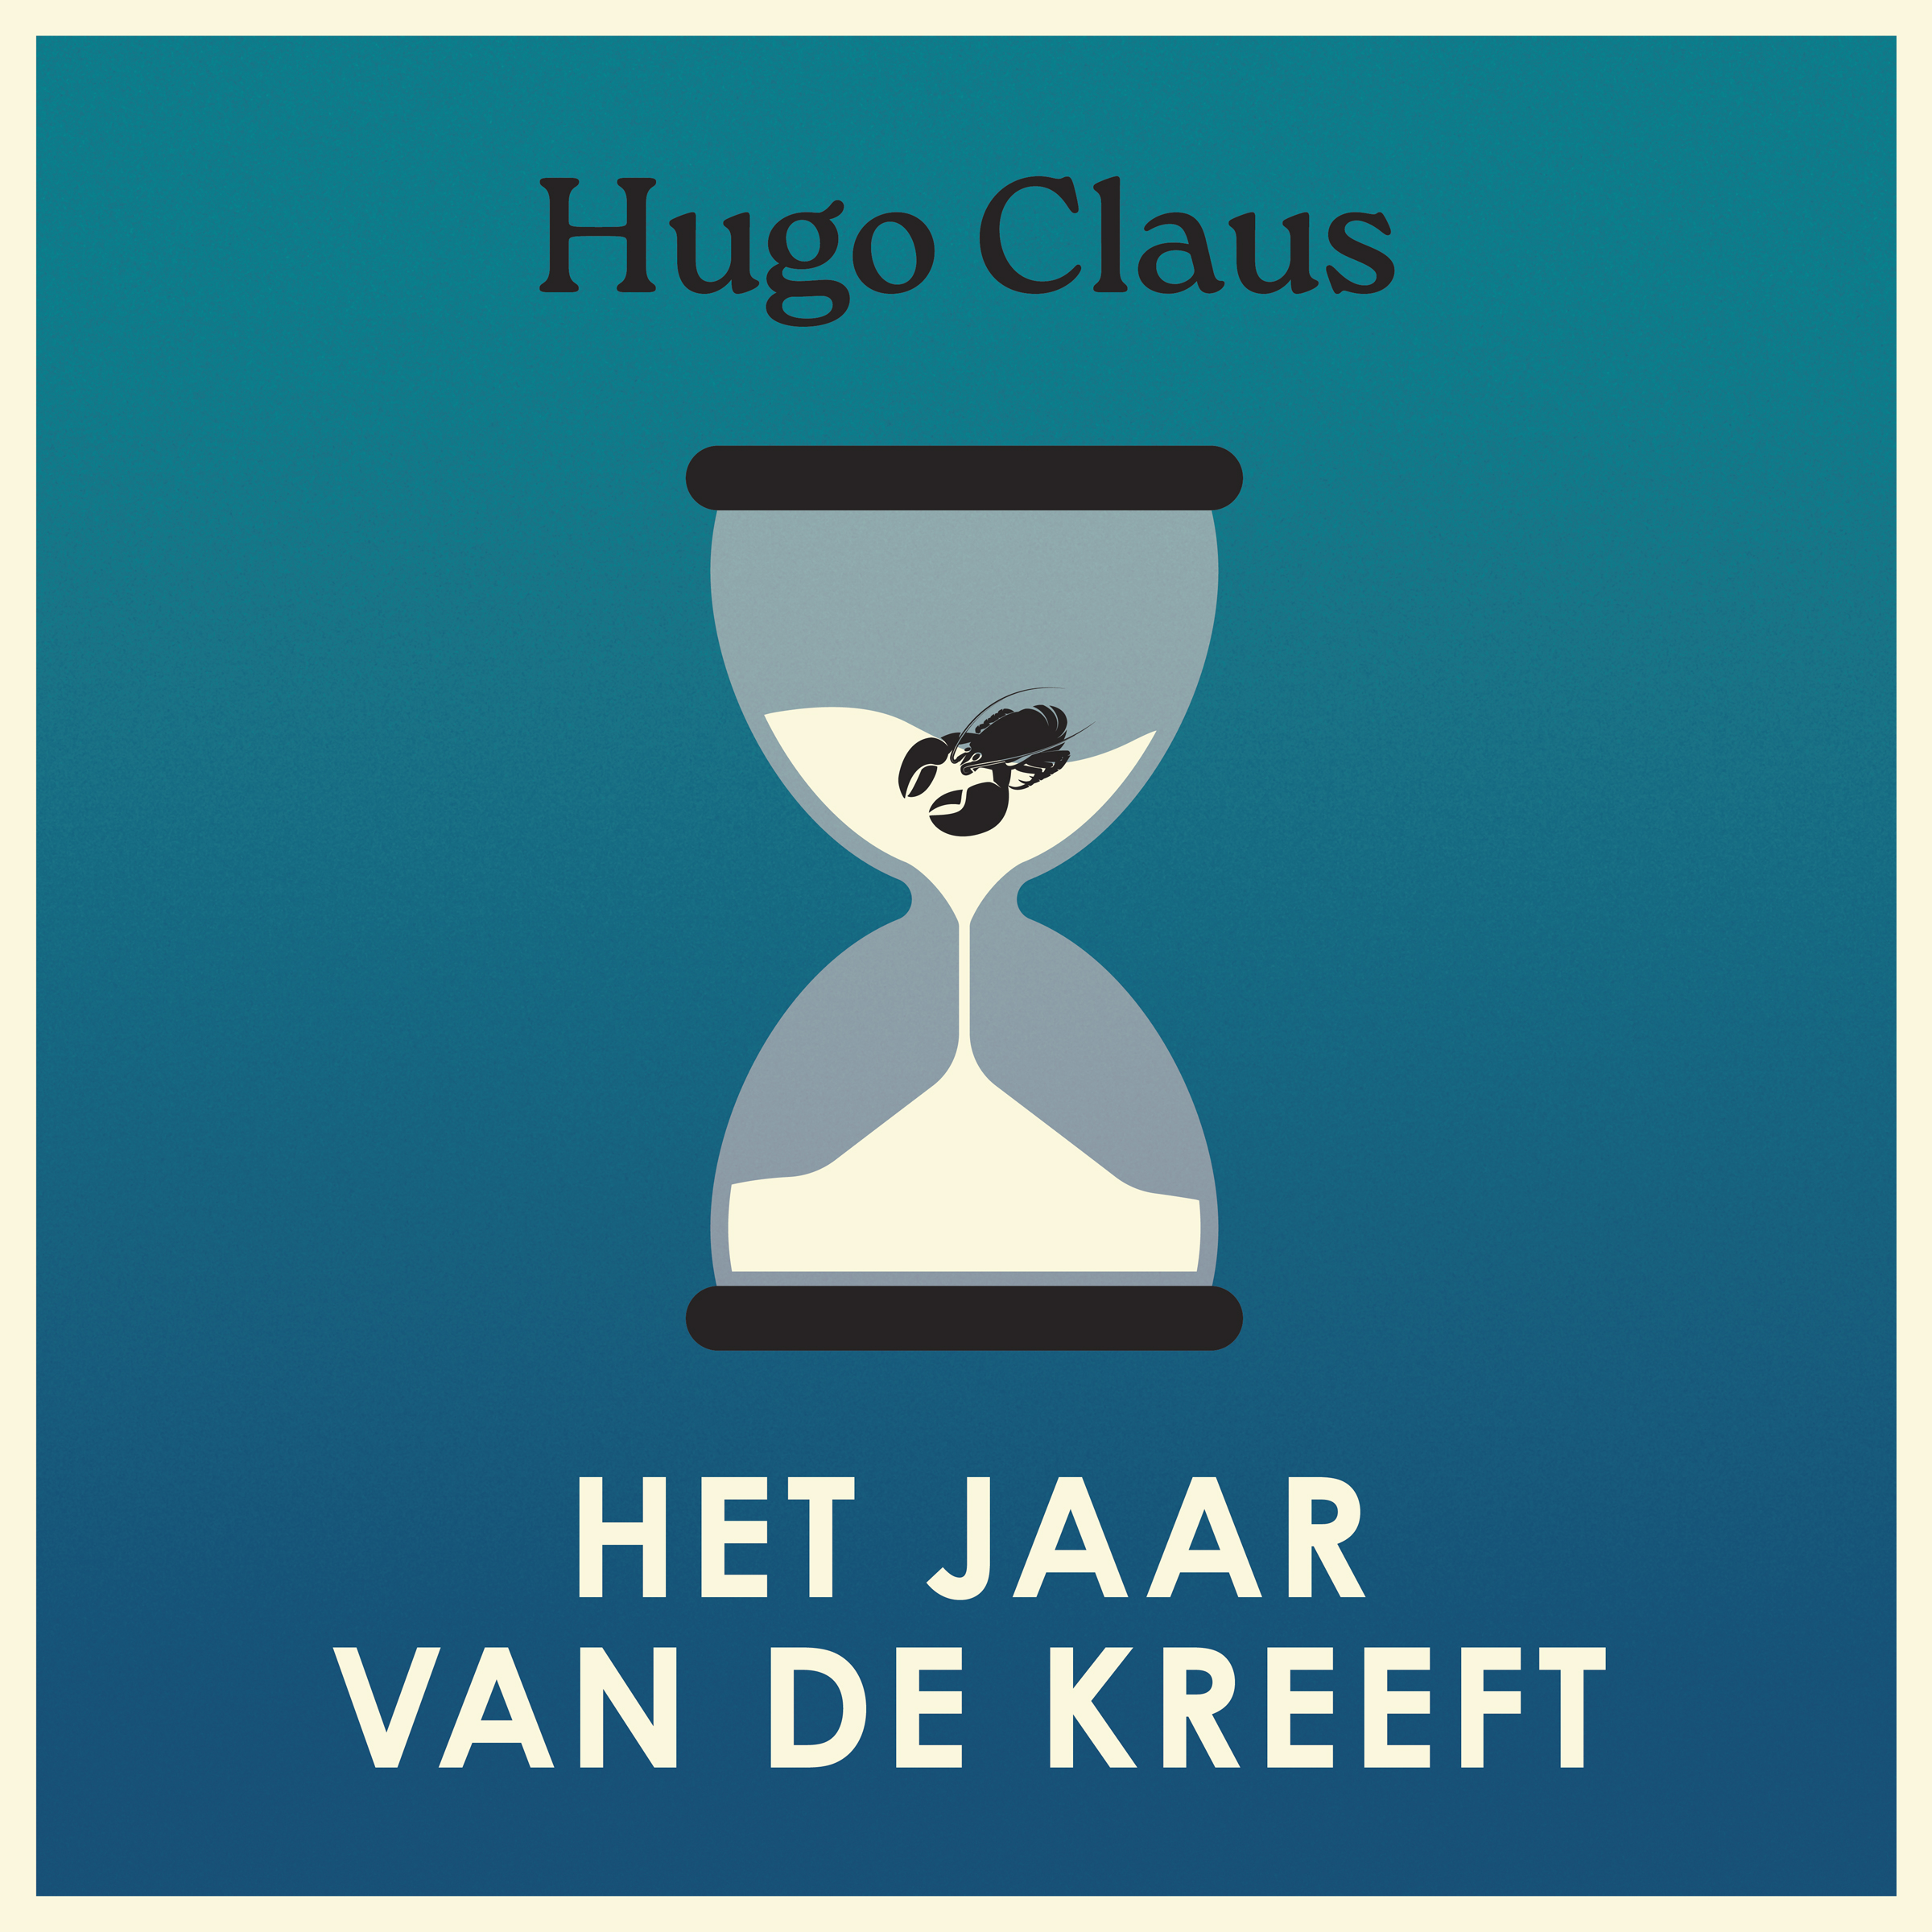 Hugo Claus - Het jaar van de kreeft